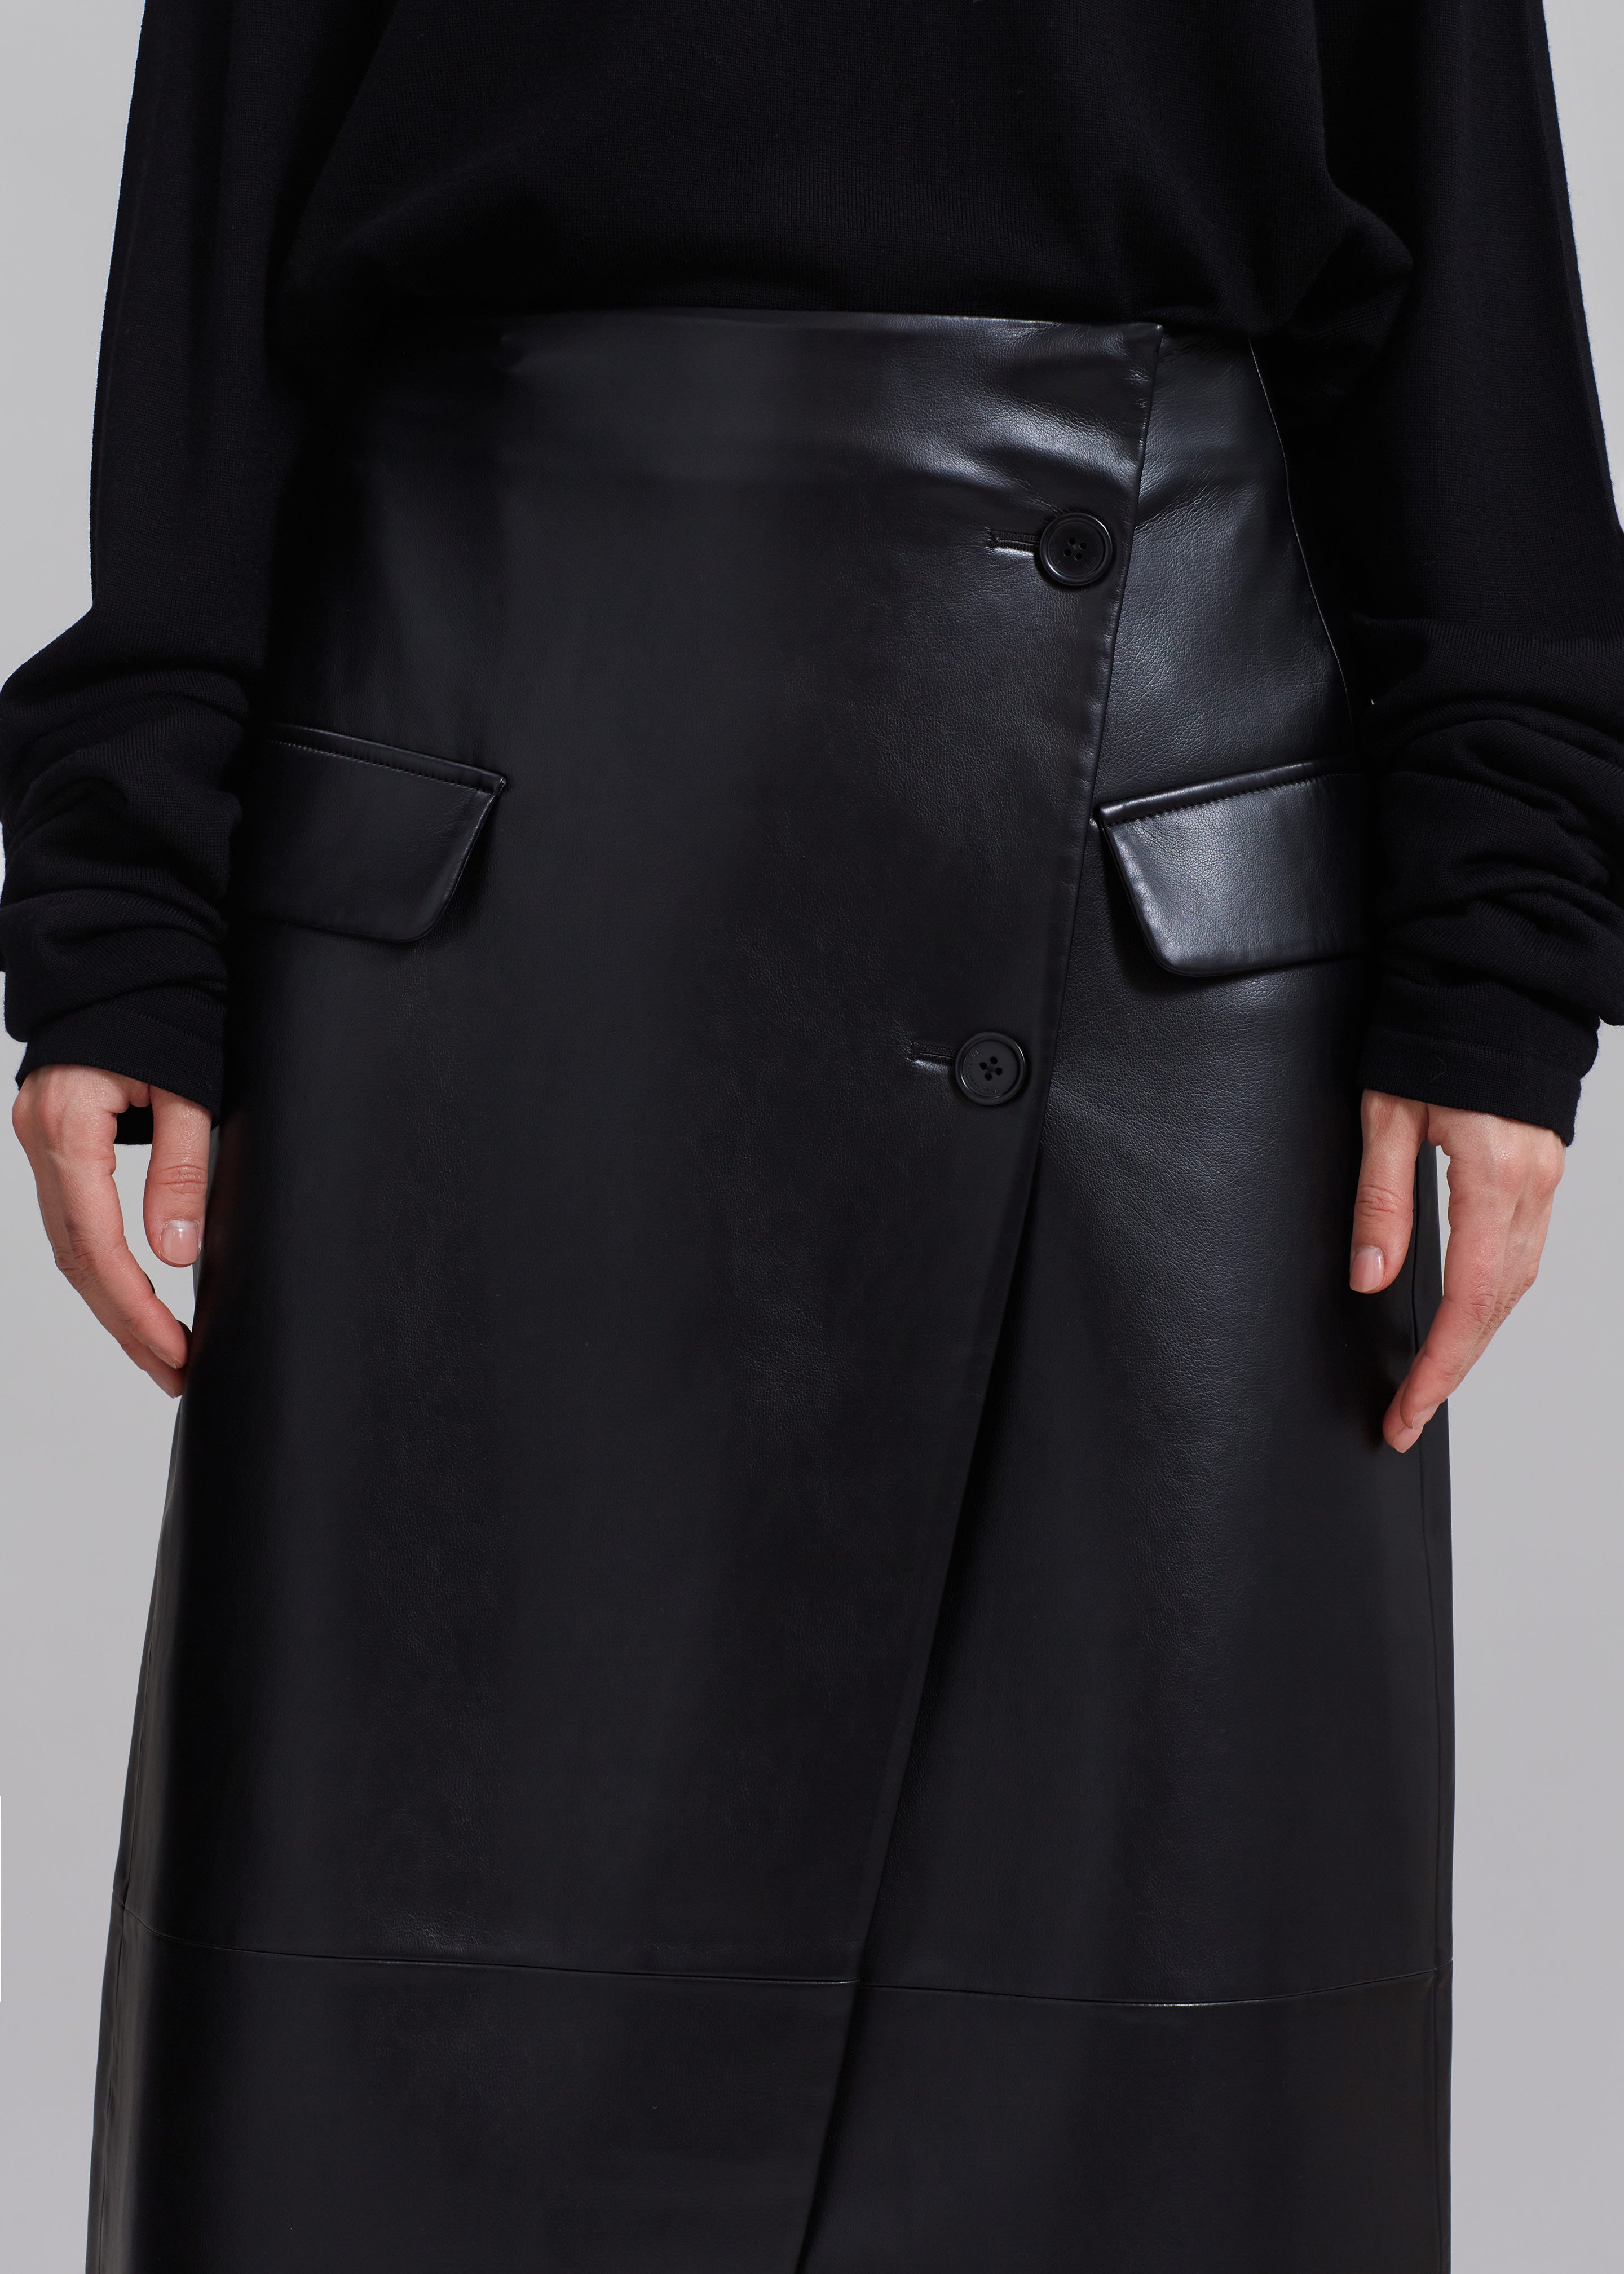 Nan Long Faux Leather Cross Skirt - Black - 3